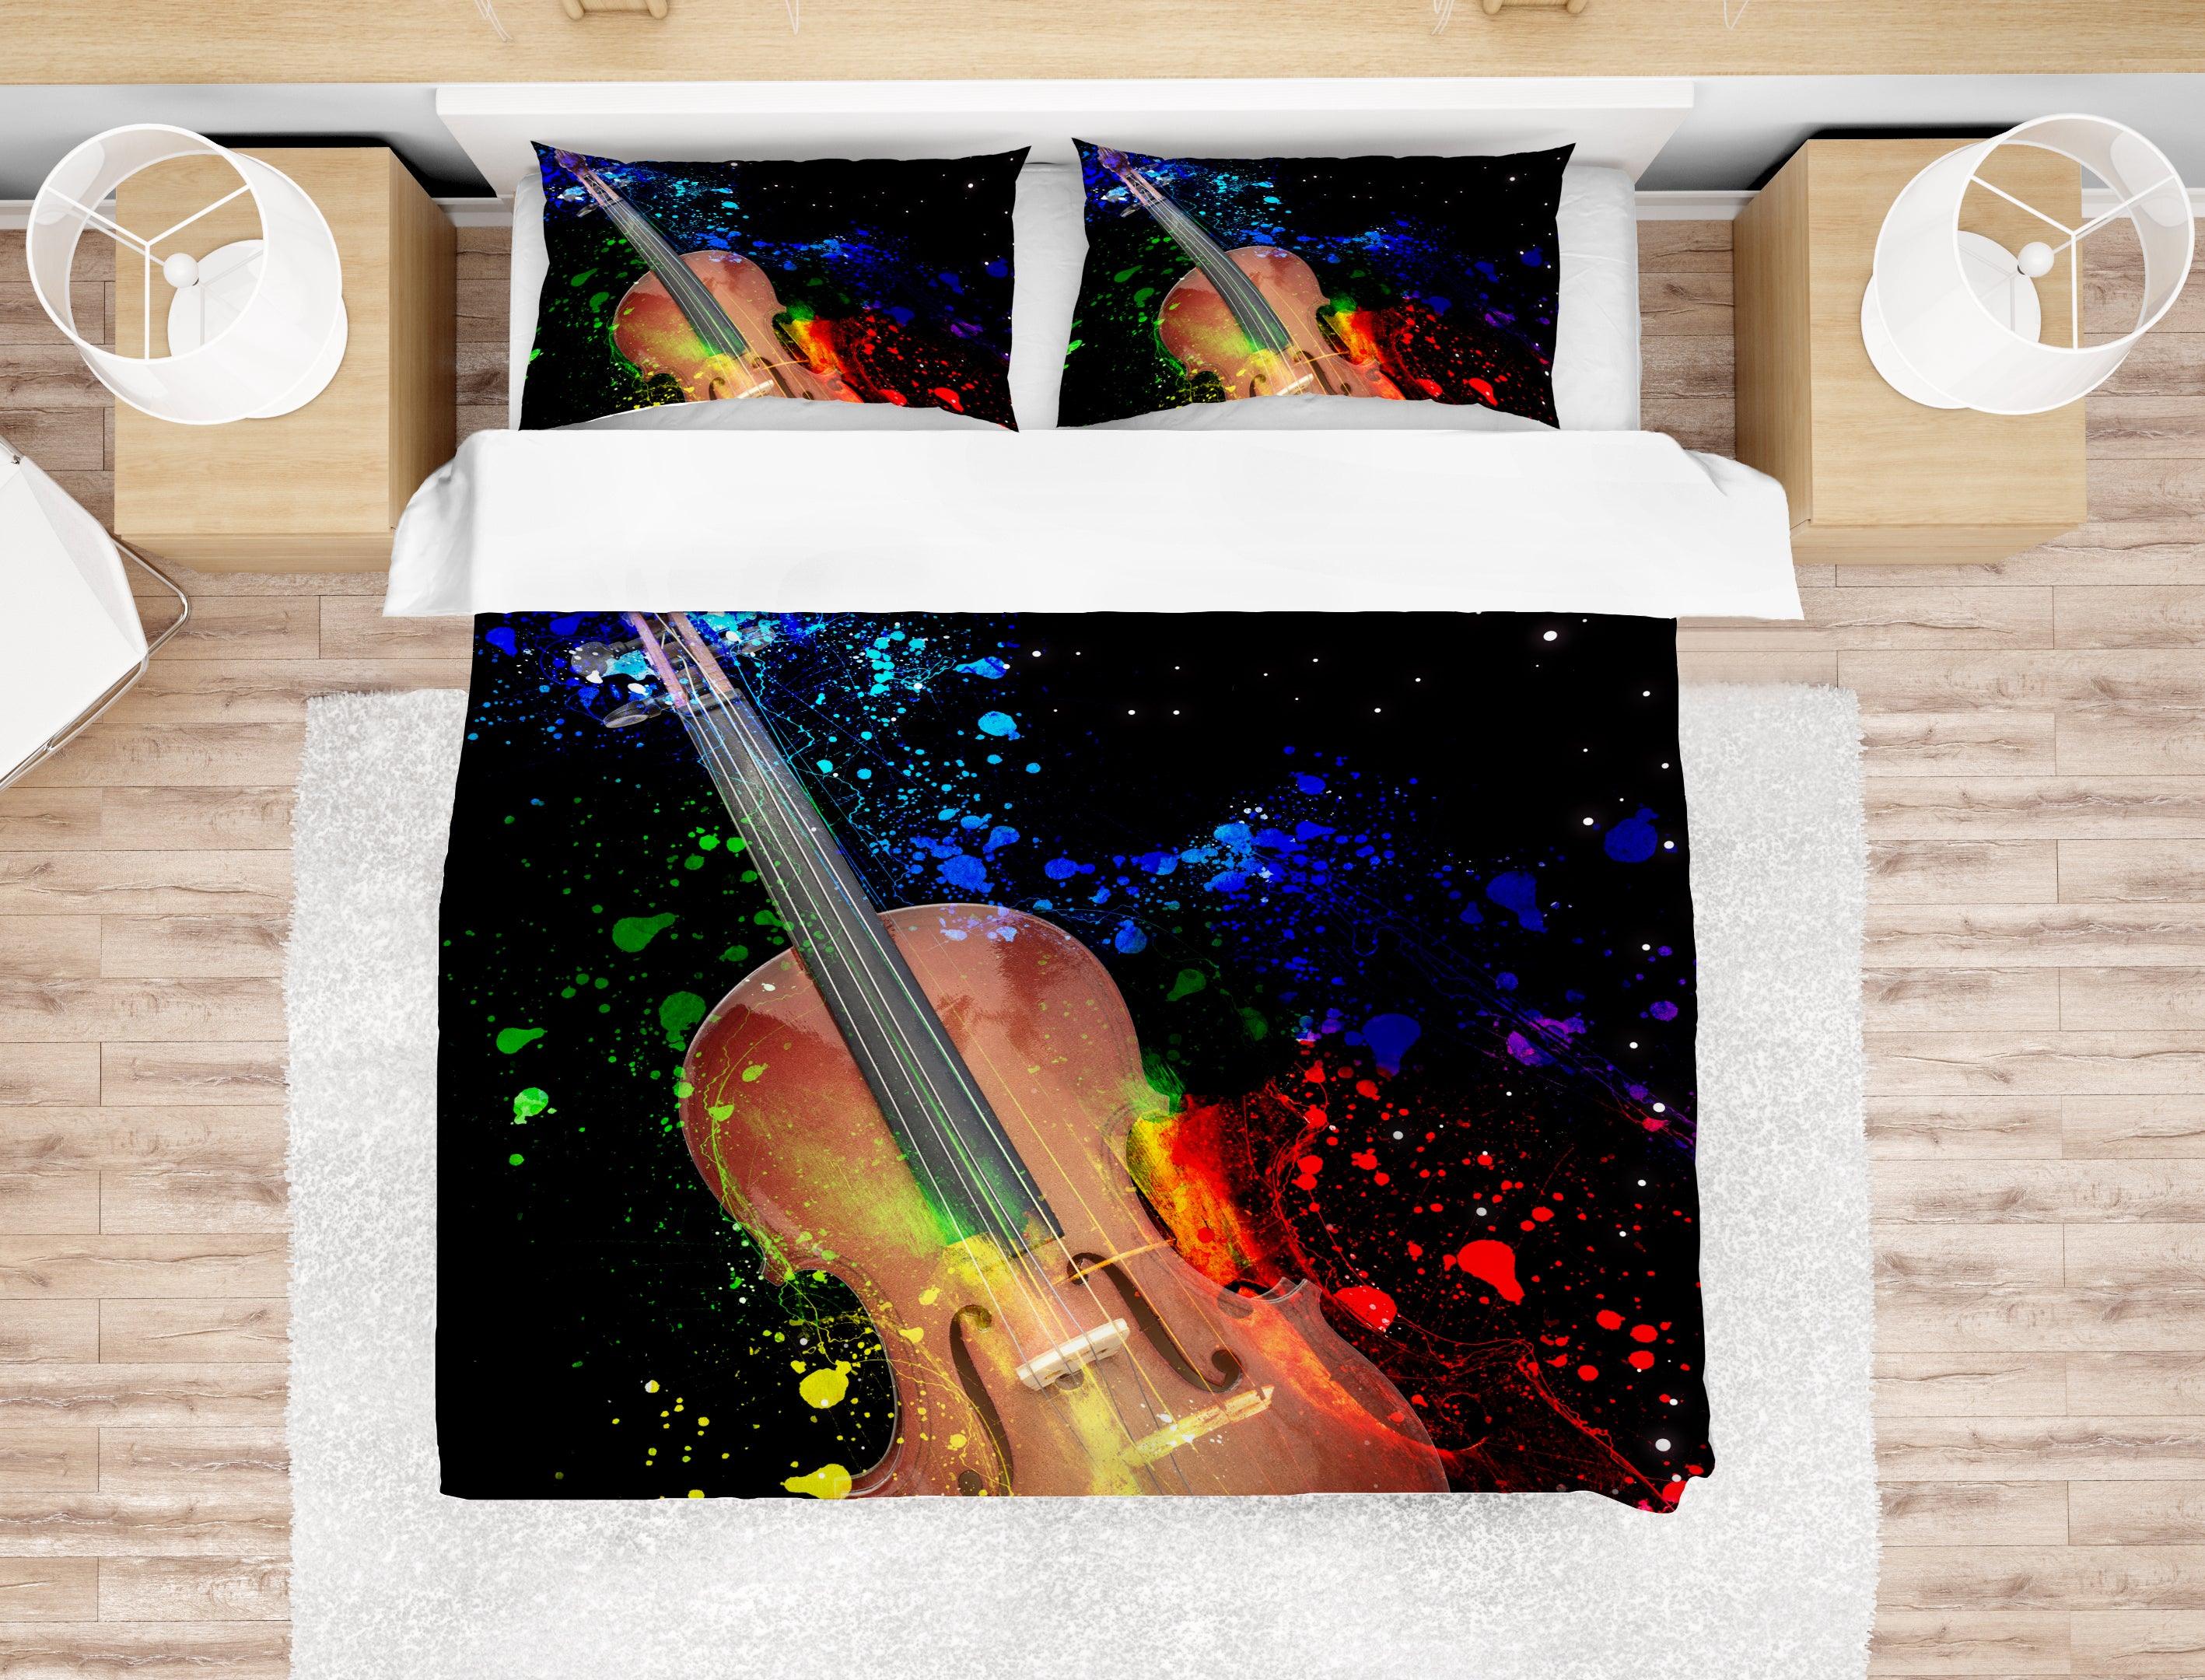 3D Violin Quilt Cover Set Bedding Set Pillowcases 03- Jess Art Decoration